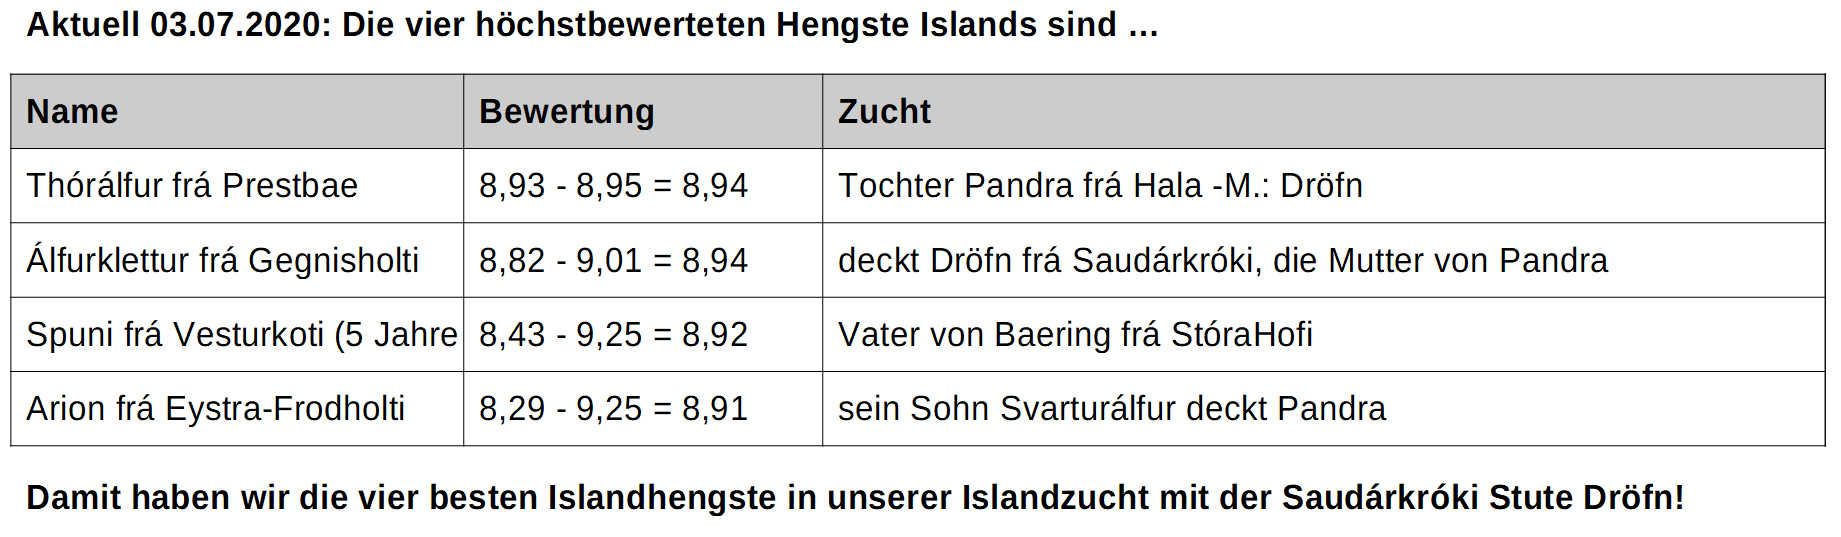 höchstbewertete Island-Hengste